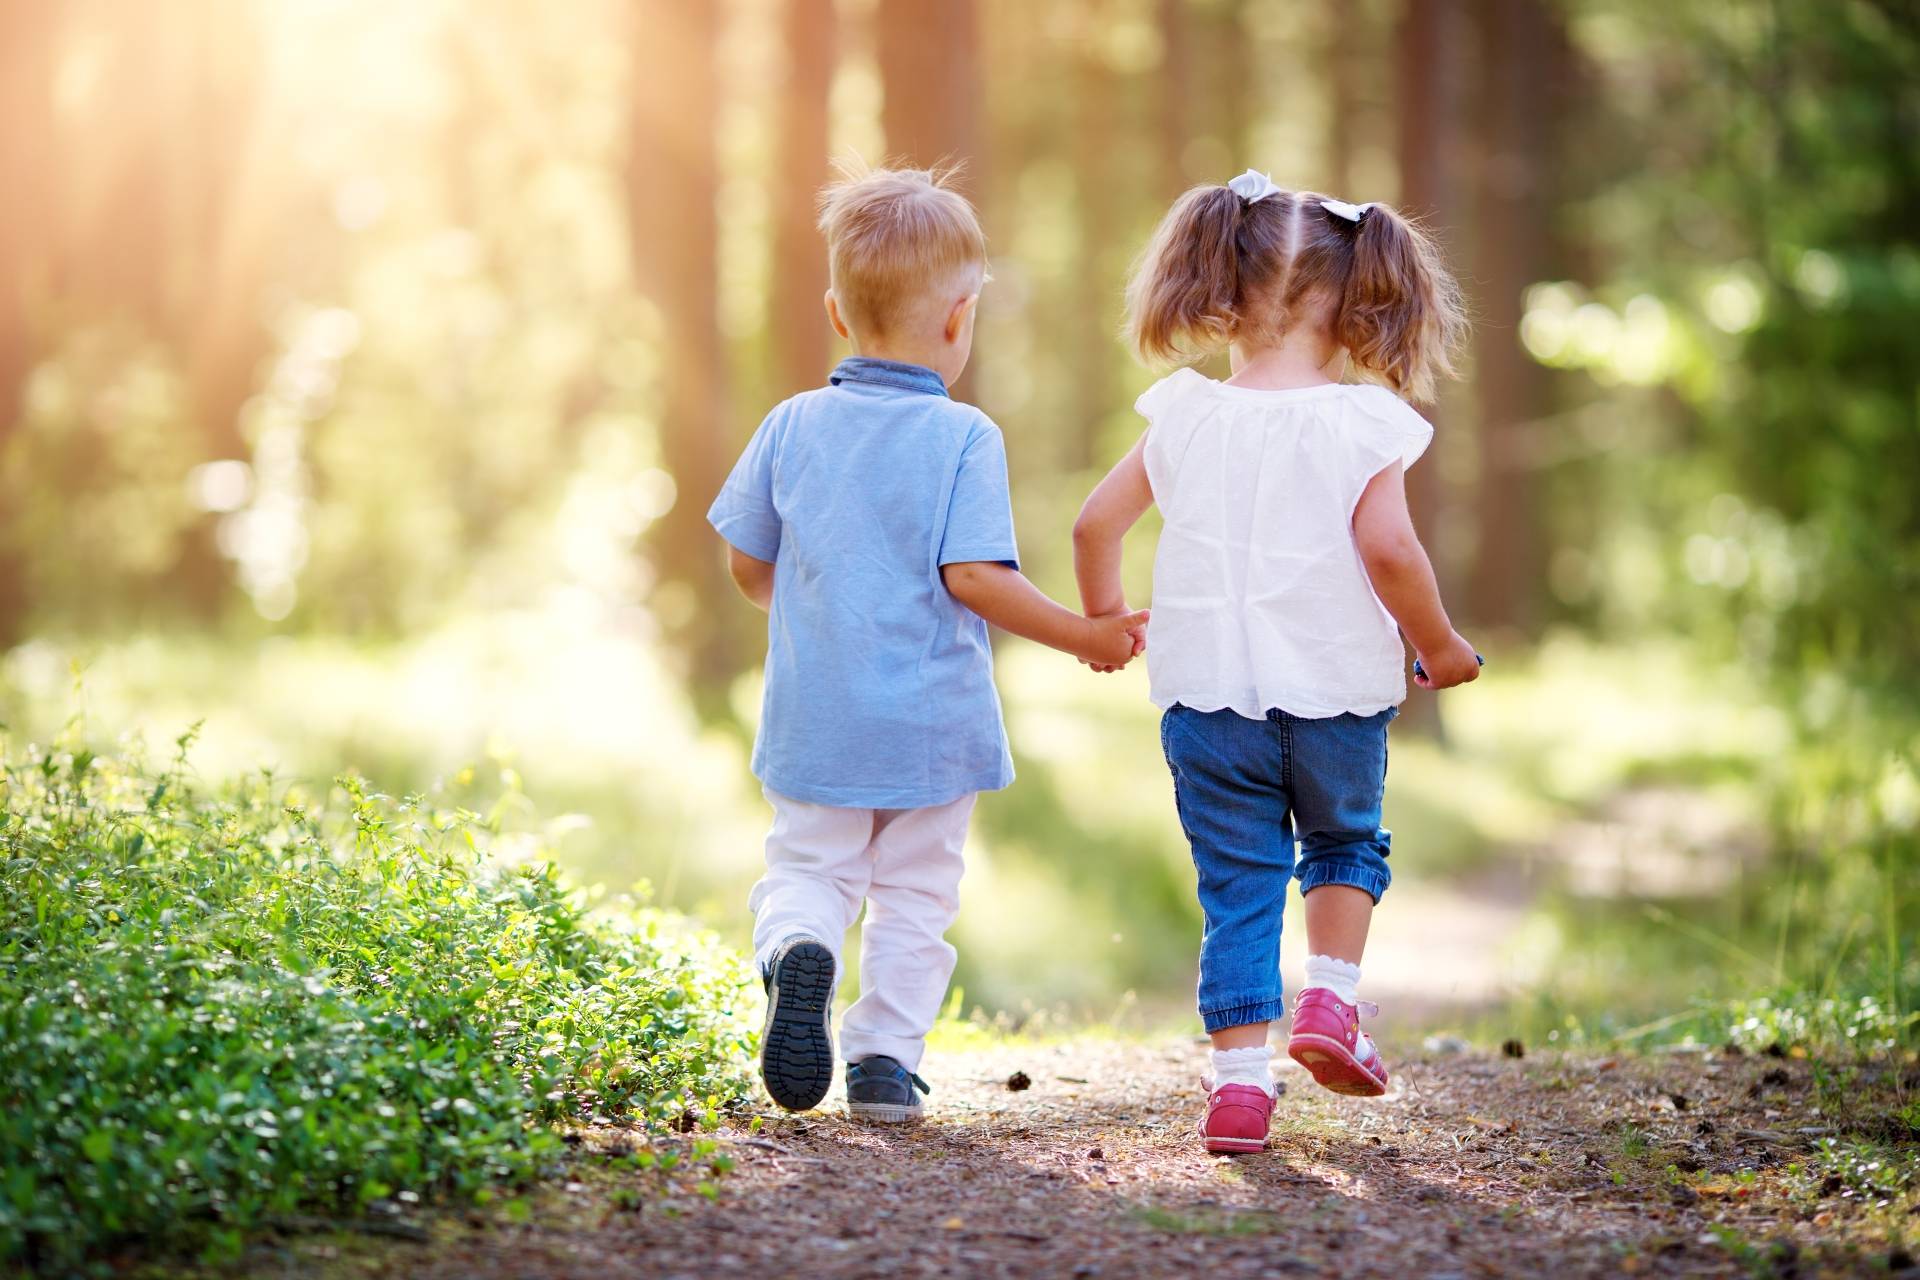 Borelioza u dzieci - jak ochronić dziecko przed kleszczami i jak wyciągnąć kleszcza? Dziewczynka i chłopiec idą za rękę przez las.